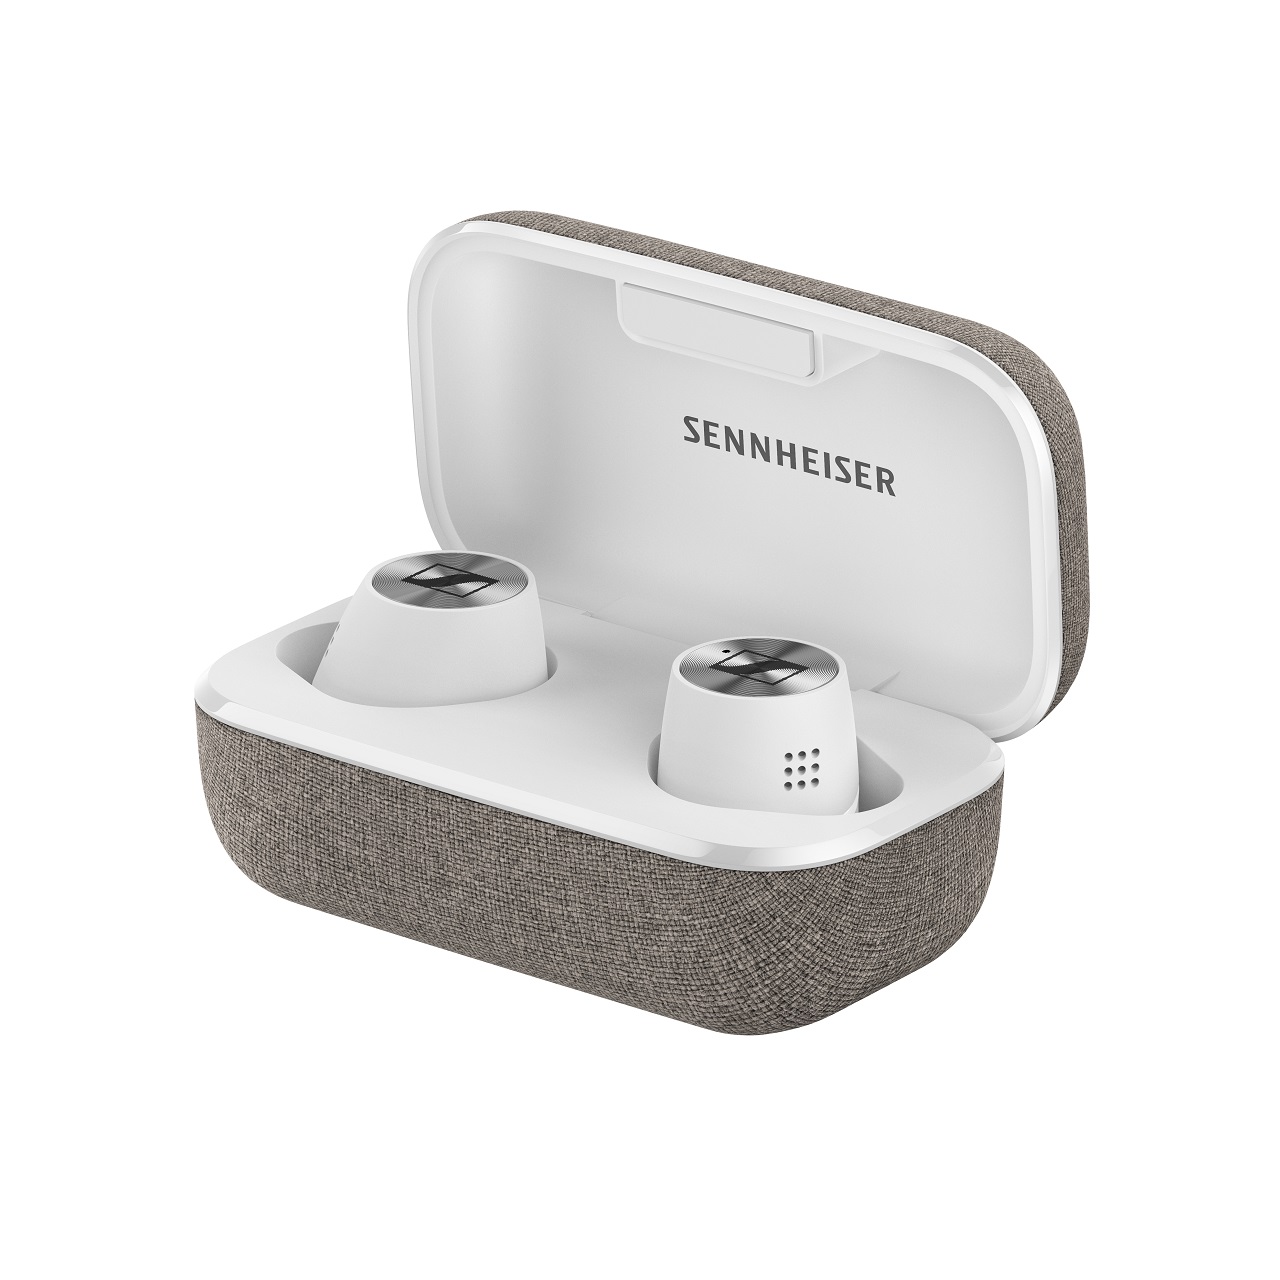 Sennheiser Momentum True Wireless 2: słuchawki TWS z aktywną redukcją szumów i autonomią do 28 godzin